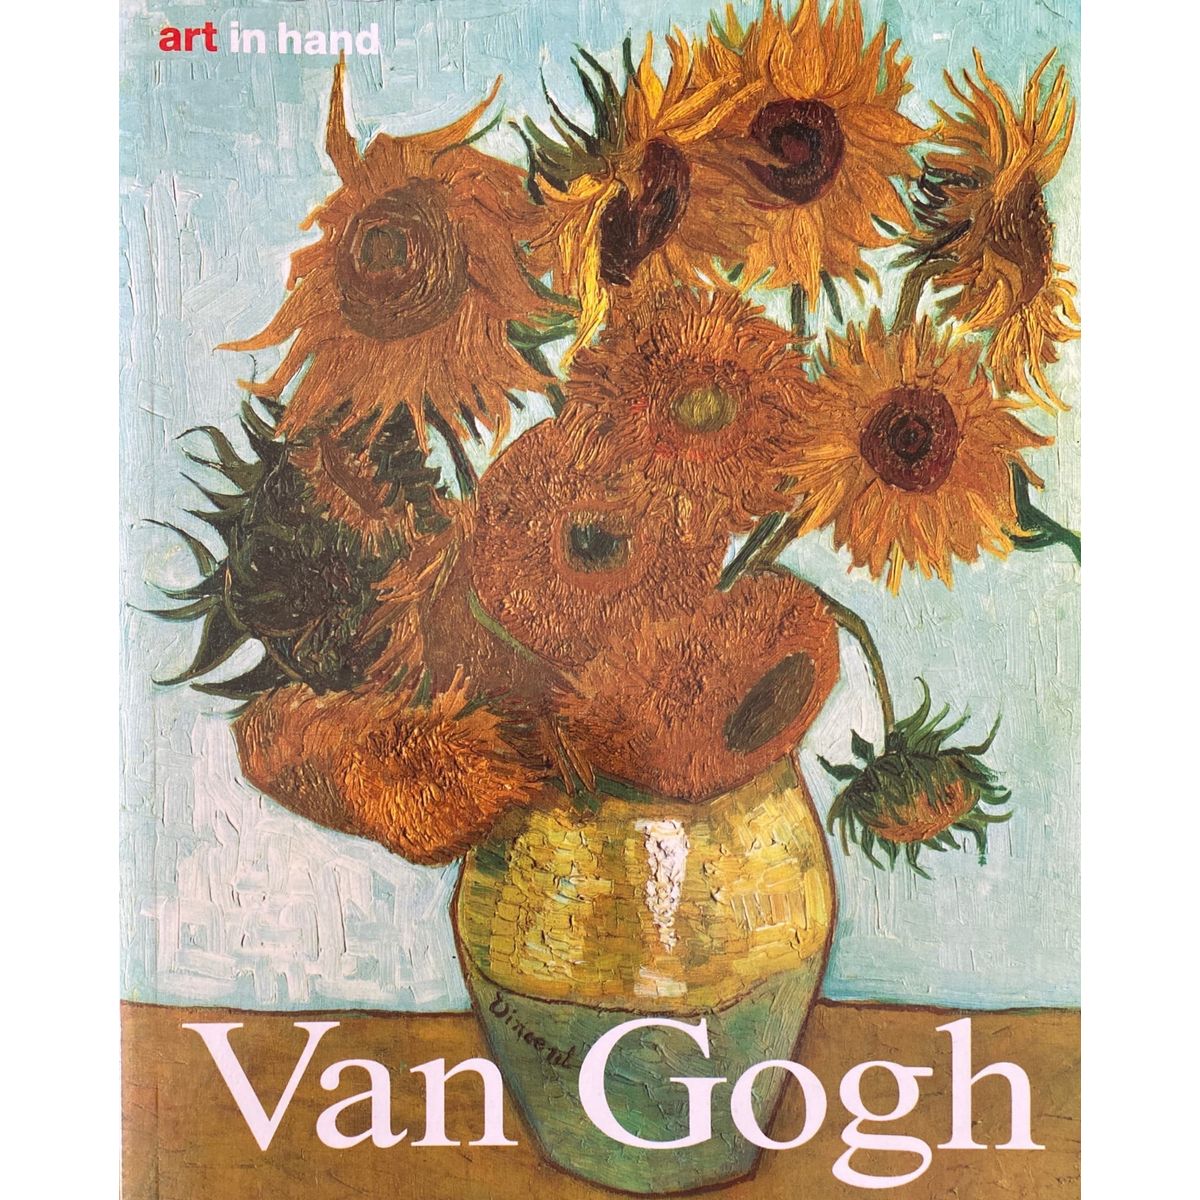 ISBN: 9783829029384 / 3829029381 - Van Gogh by Dieter Beaujean, Art in Hand [2000]